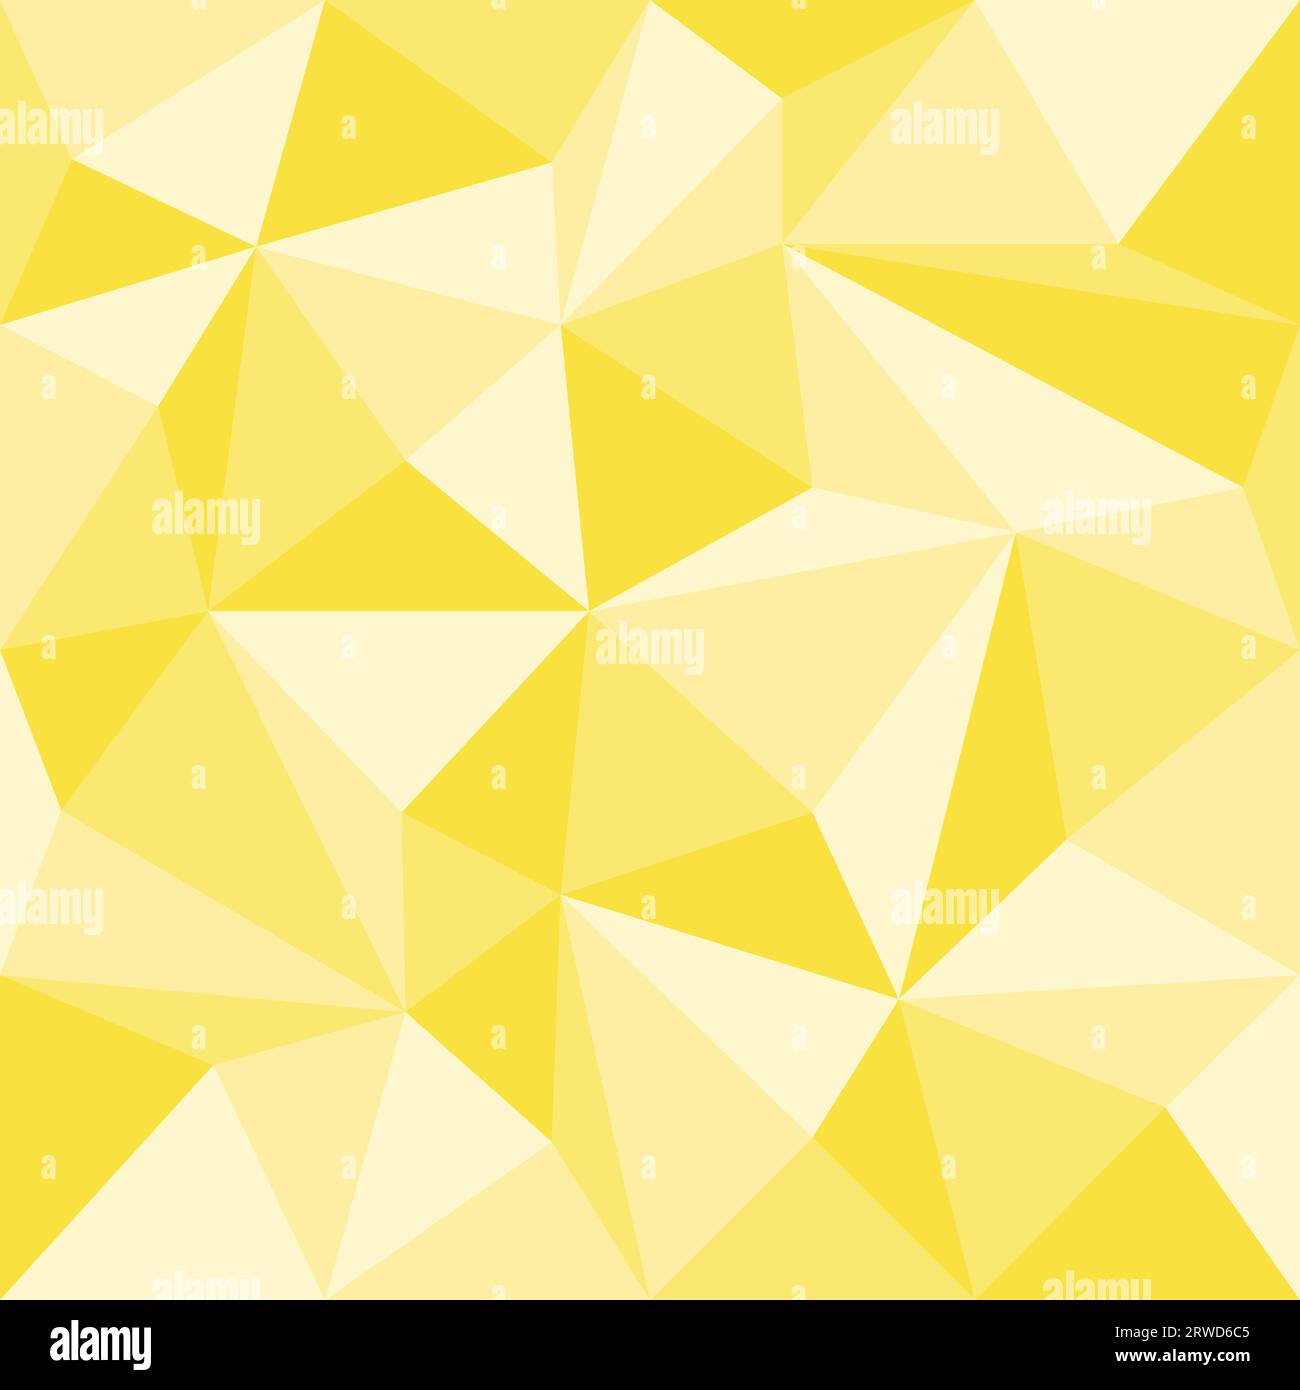 Abstraktes gelbes geometrisches nahtloses Muster mit Dreiecken, Vektorillustration Stock Vektor